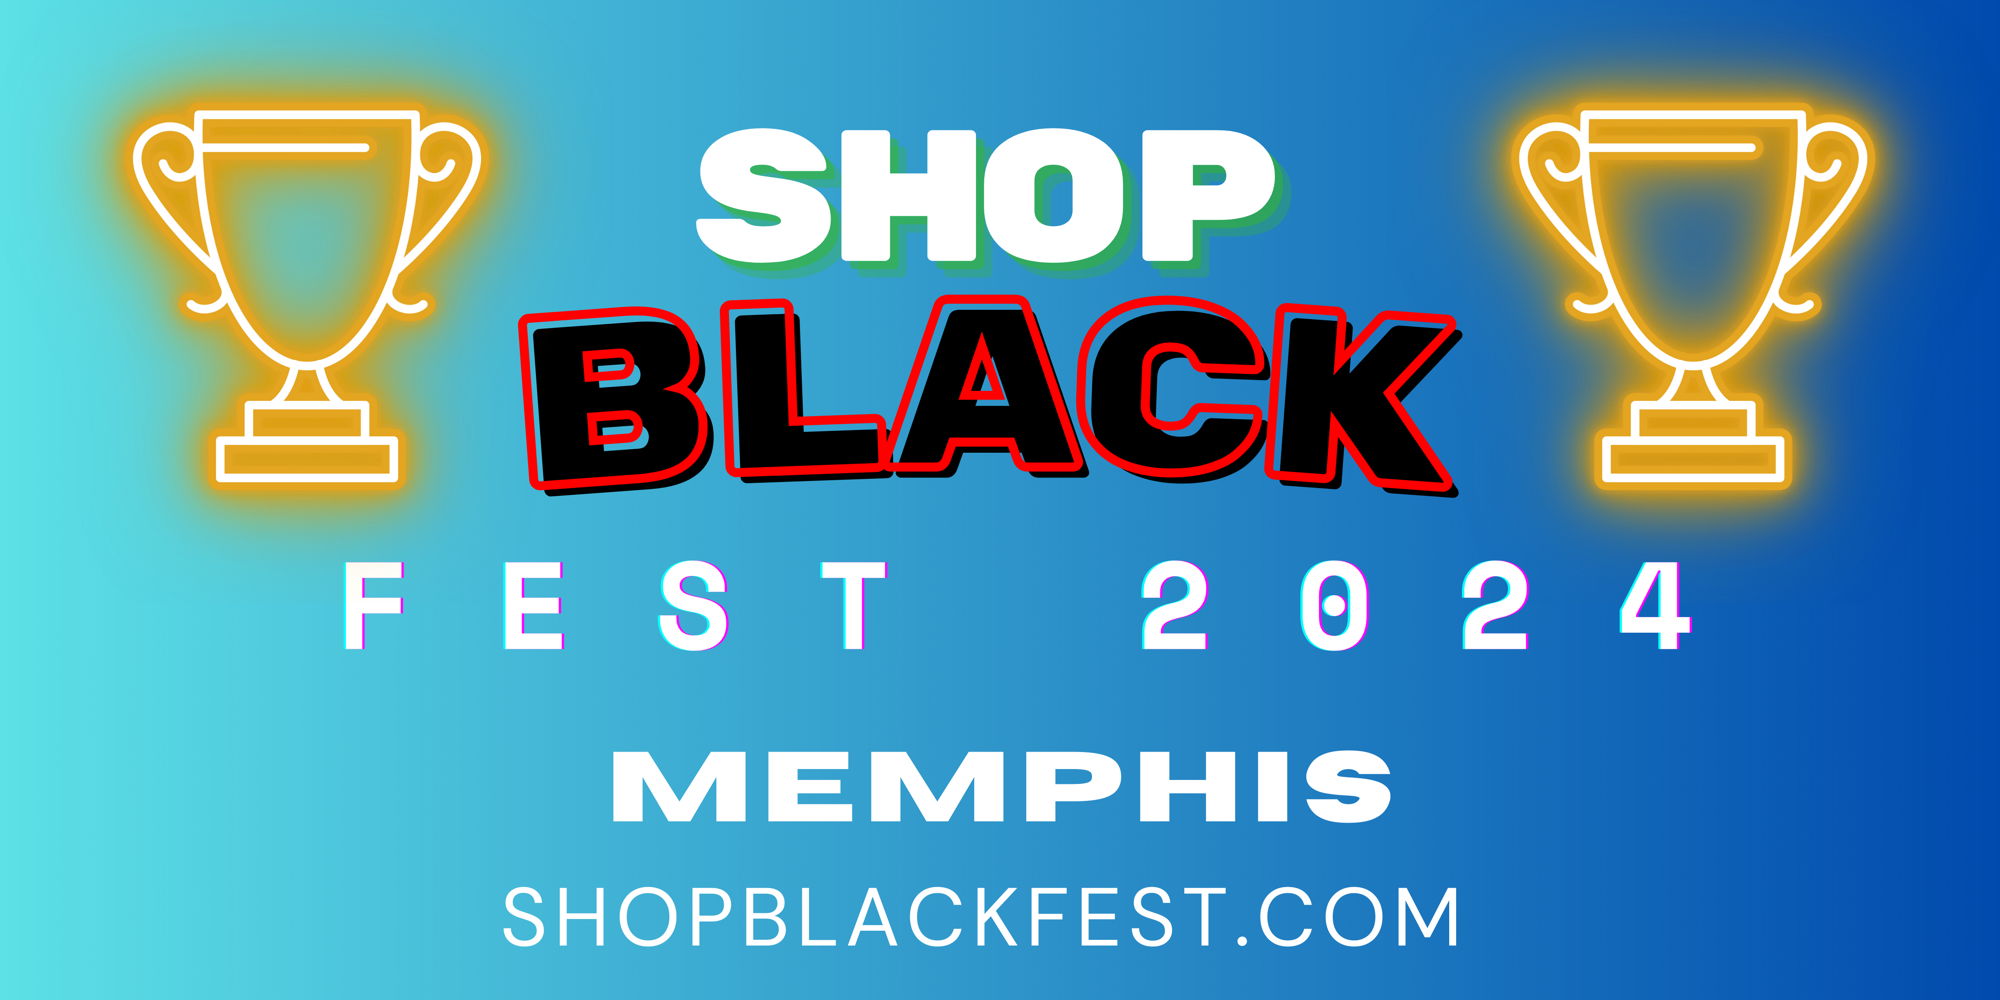 Shop Black Fest - Memphis promotional image